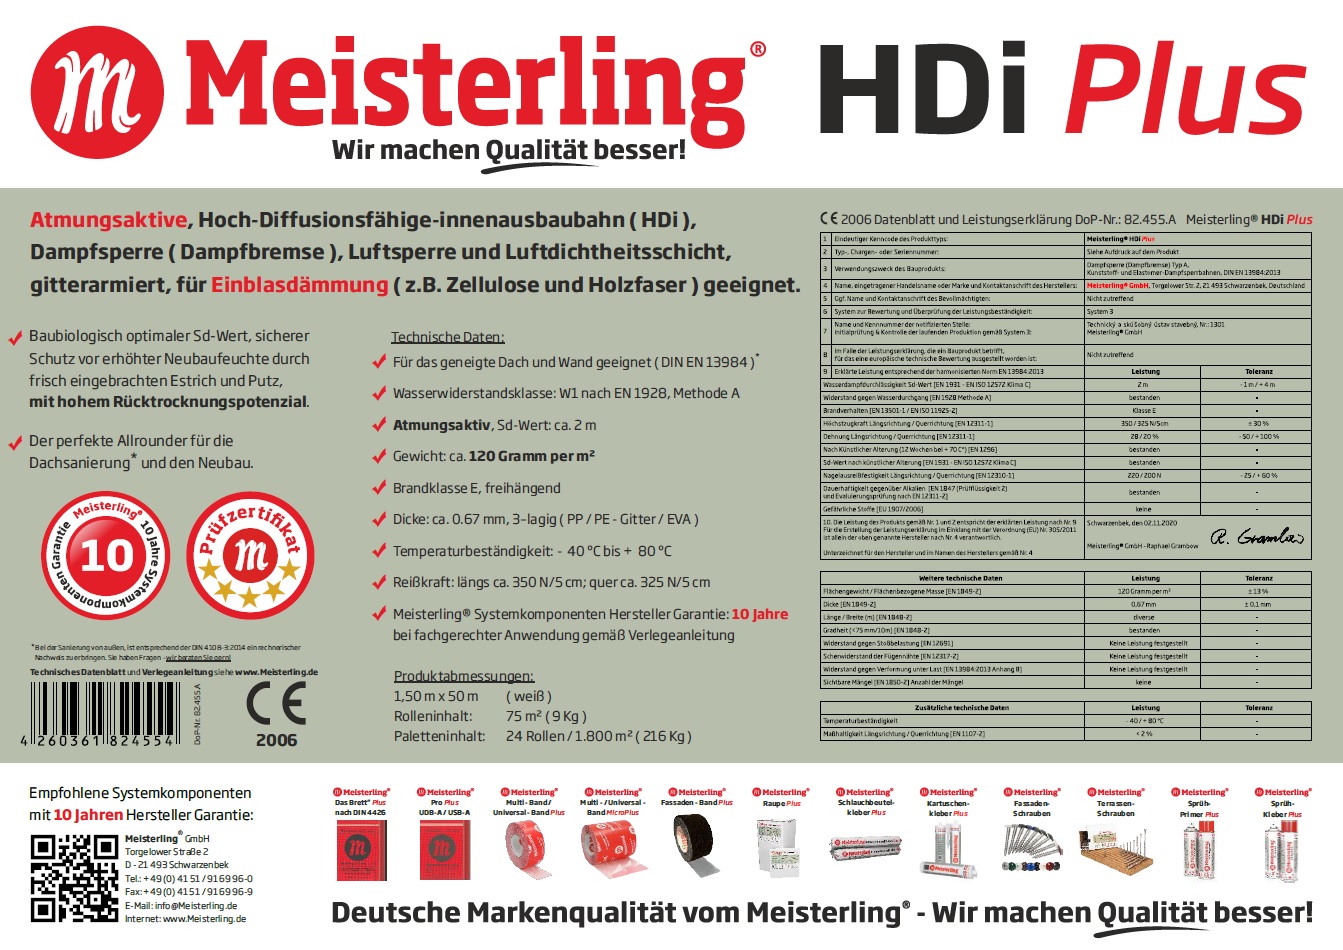 Meisterling® HDi PLUS Technische Daten